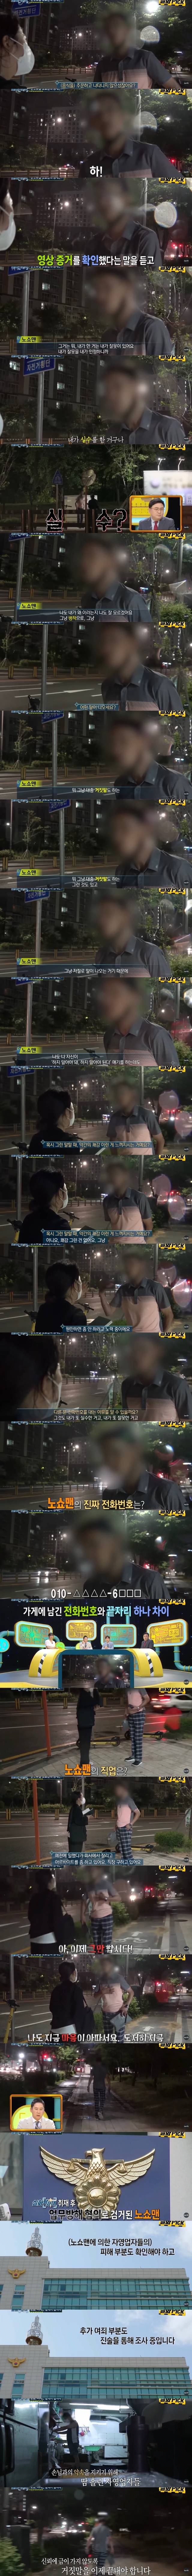 김밥 40줄 노쇼맨 찾아낸 방송국 | 인스티즈